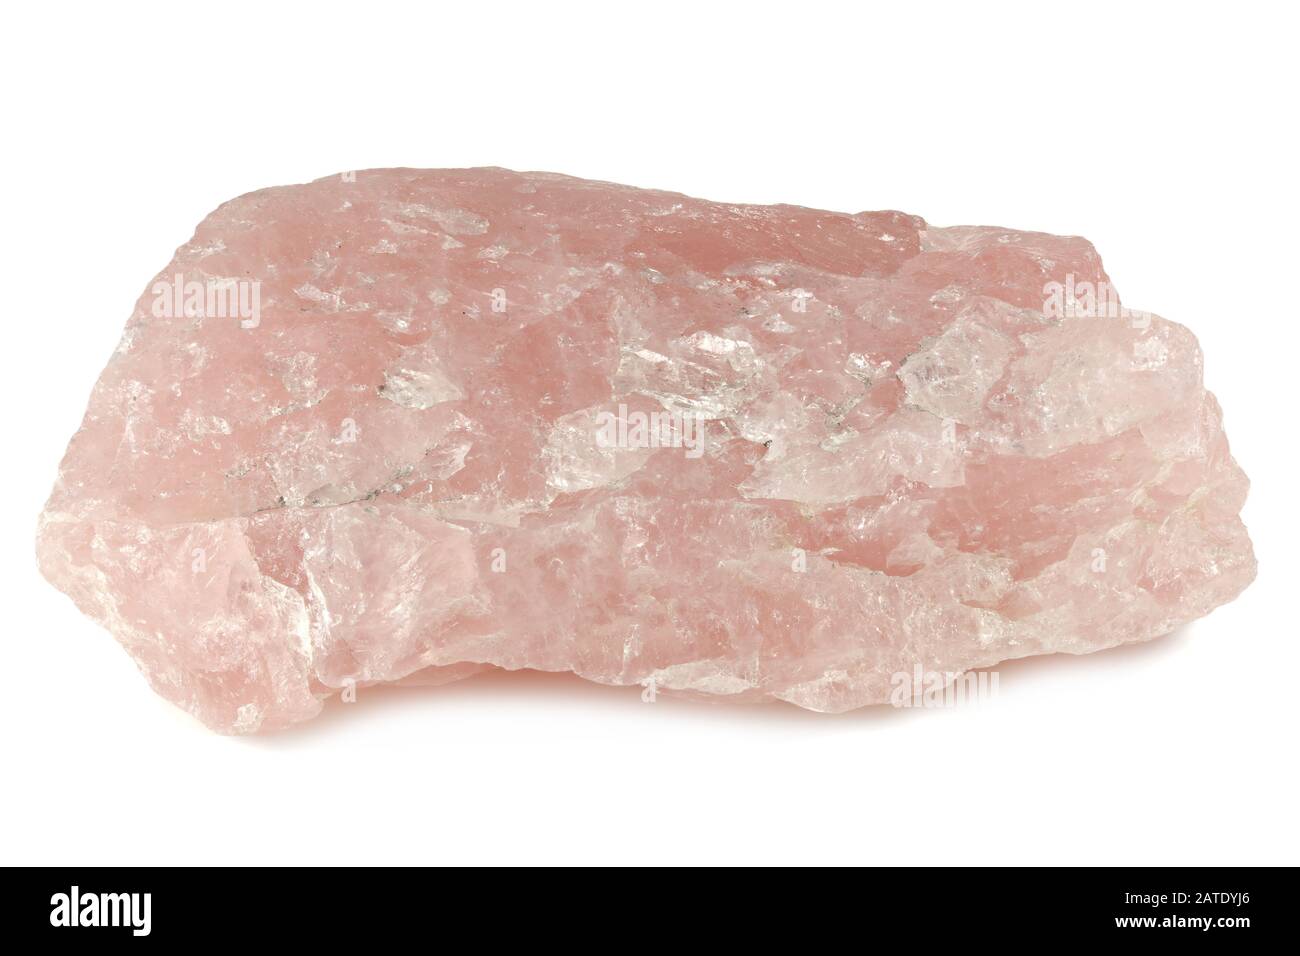 rose quartz from Namibia isolated on white background Stock Photo